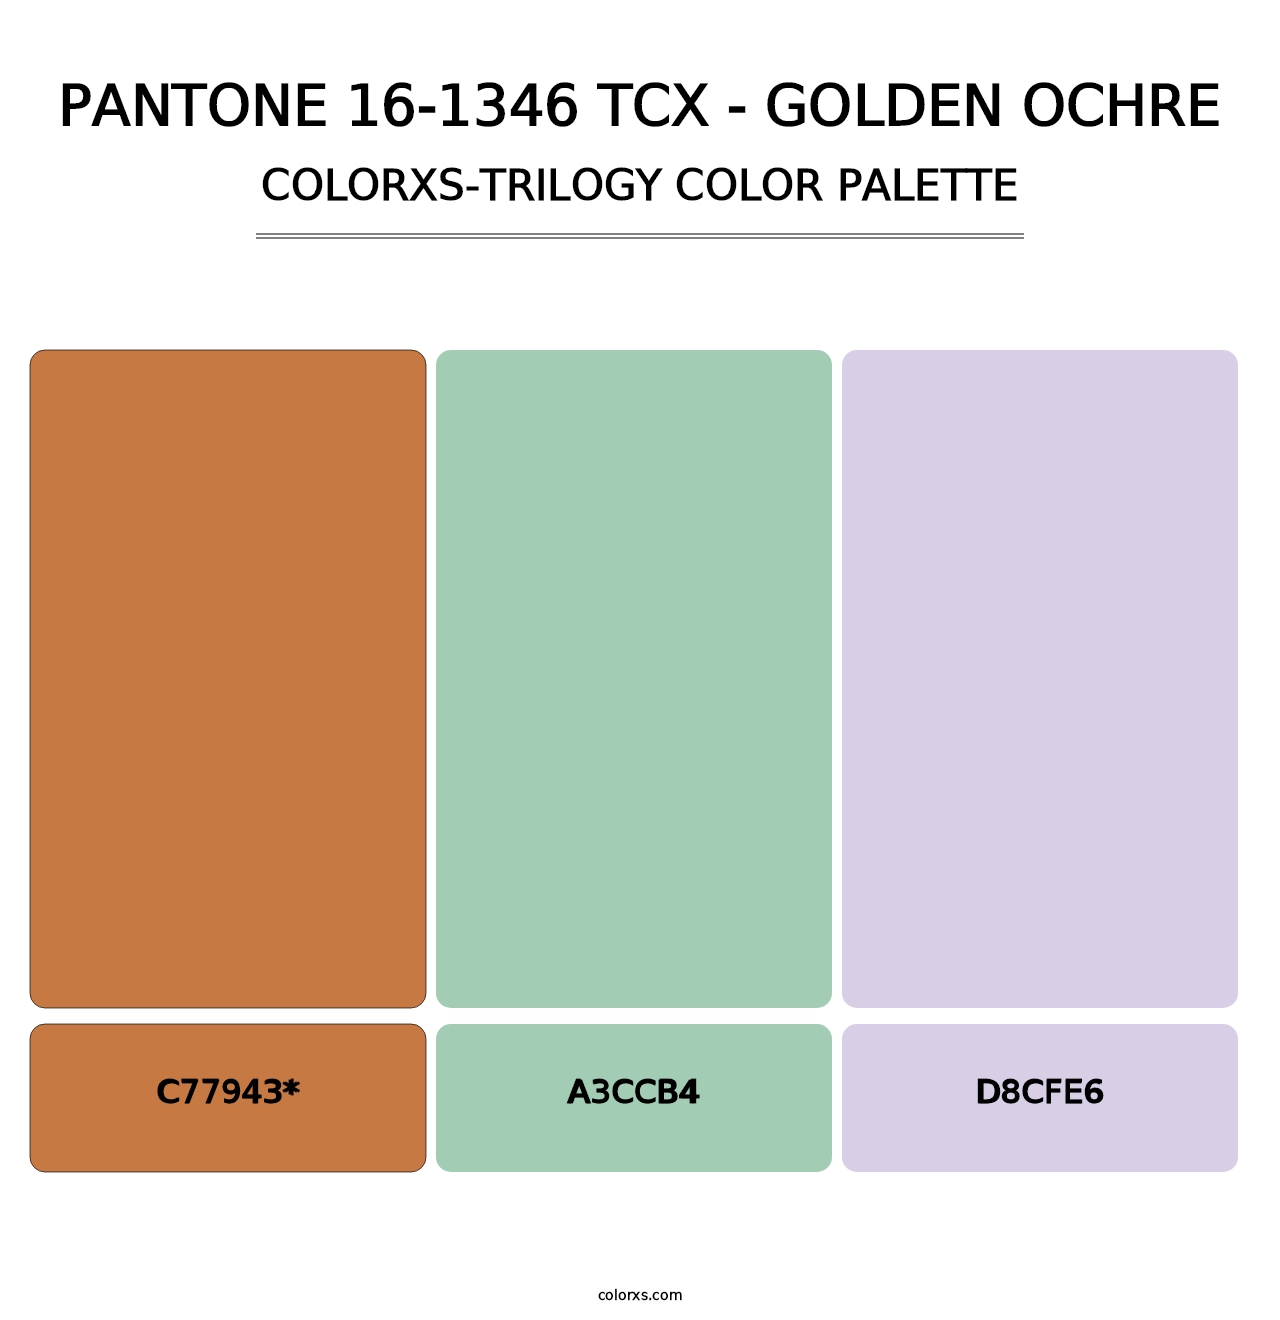 PANTONE 16-1346 TCX - Golden Ochre - Colorxs Trilogy Palette